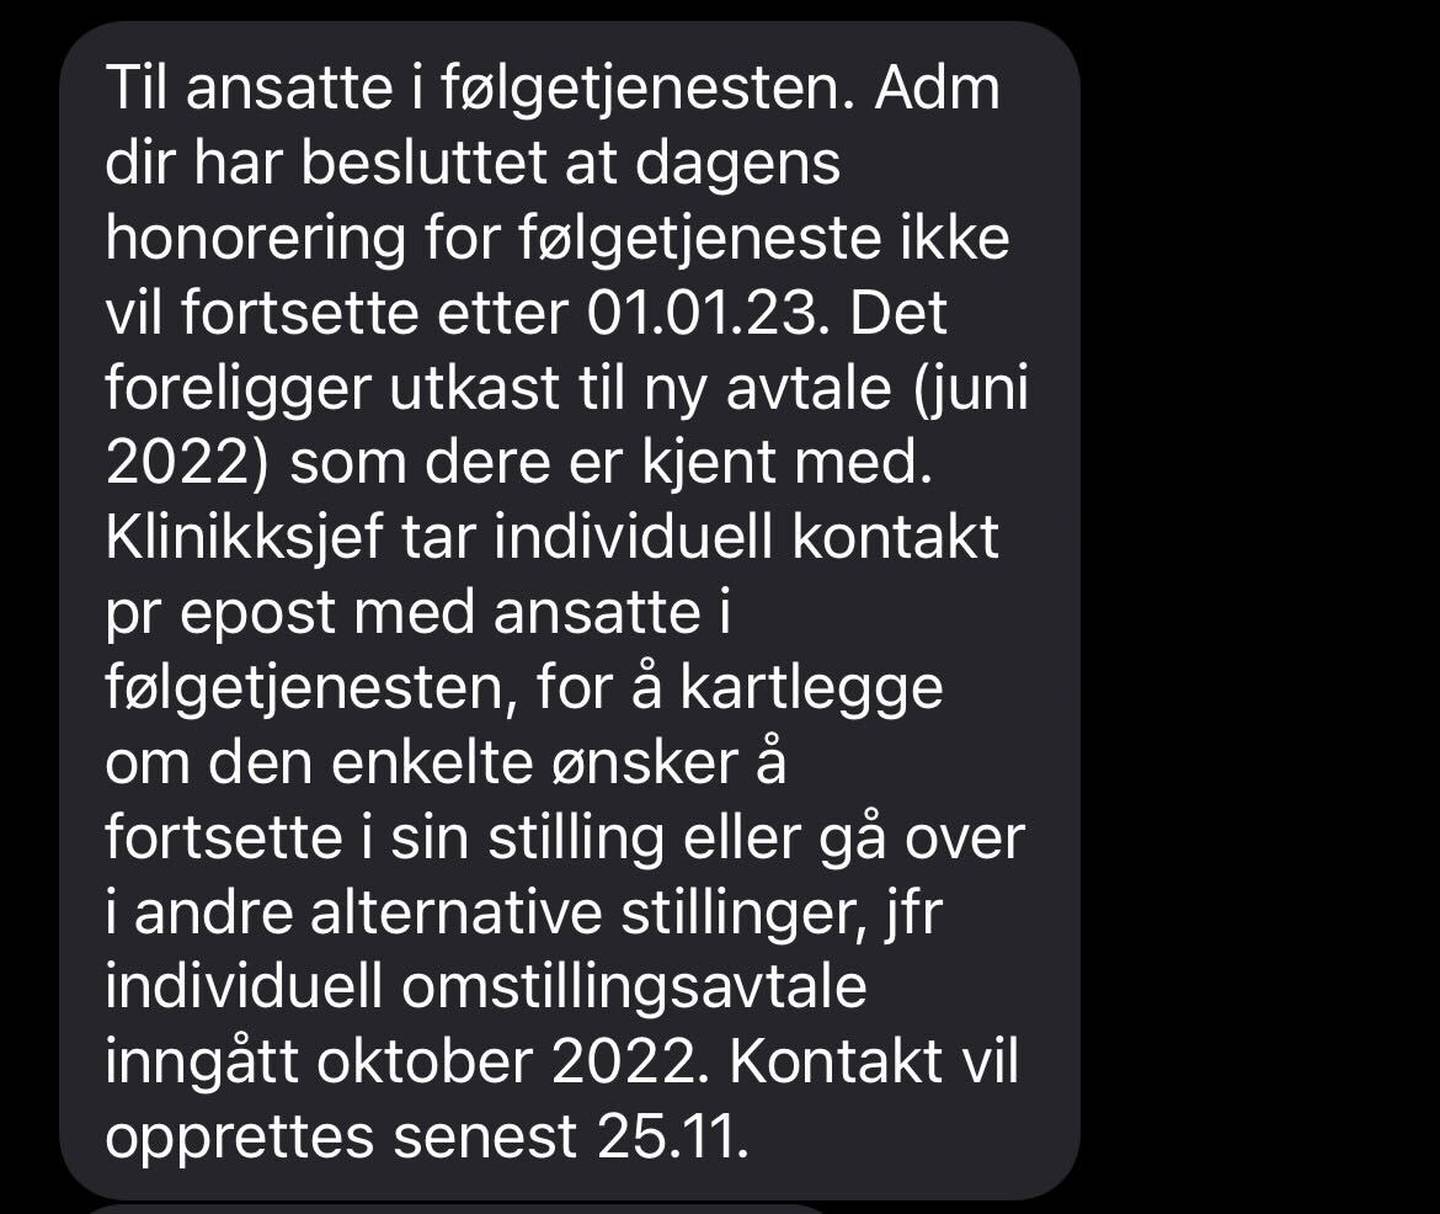 SMS om endringer i vakttillegg for følgetjenesten. Fra Helse Møre og Romsdal til ansatte i følgetjenesten.